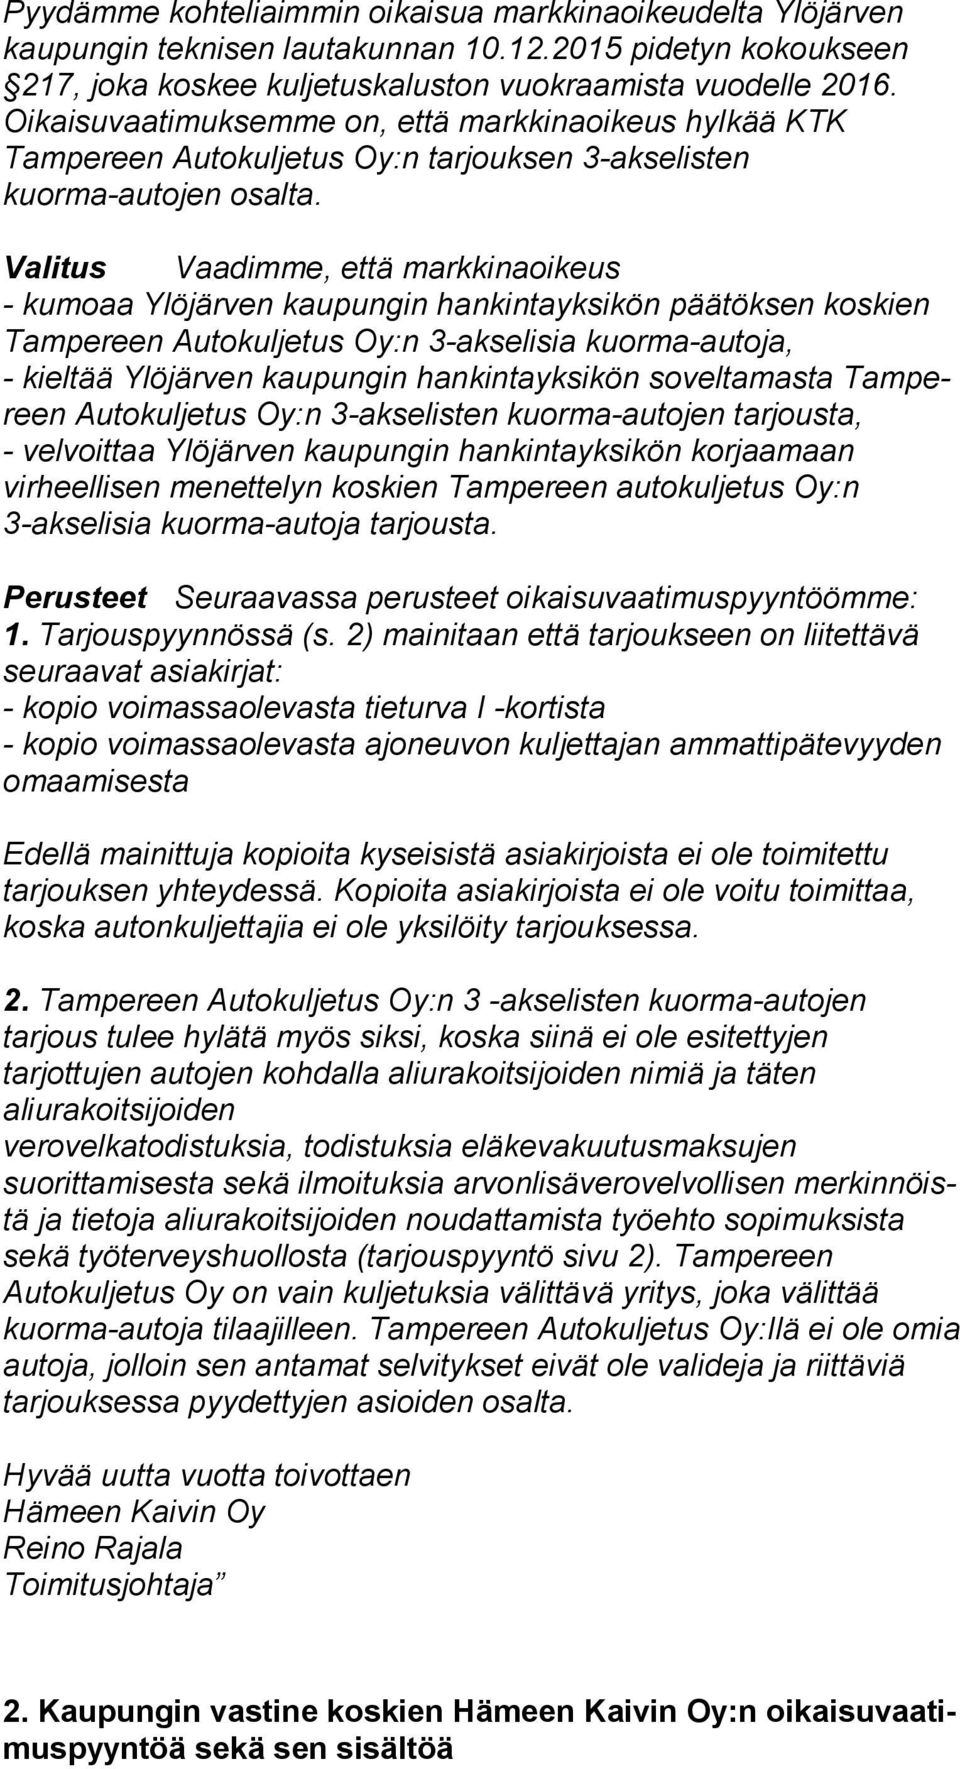 Valitus Vaadimme, että markkinaoikeus - kumoaa Ylöjärven kaupungin hankintayksikön päätöksen kos kien Tampereen Autokuljetus Oy:n 3-akselisia kuor ma-au to ja, - kieltää Ylöjärven kaupungin